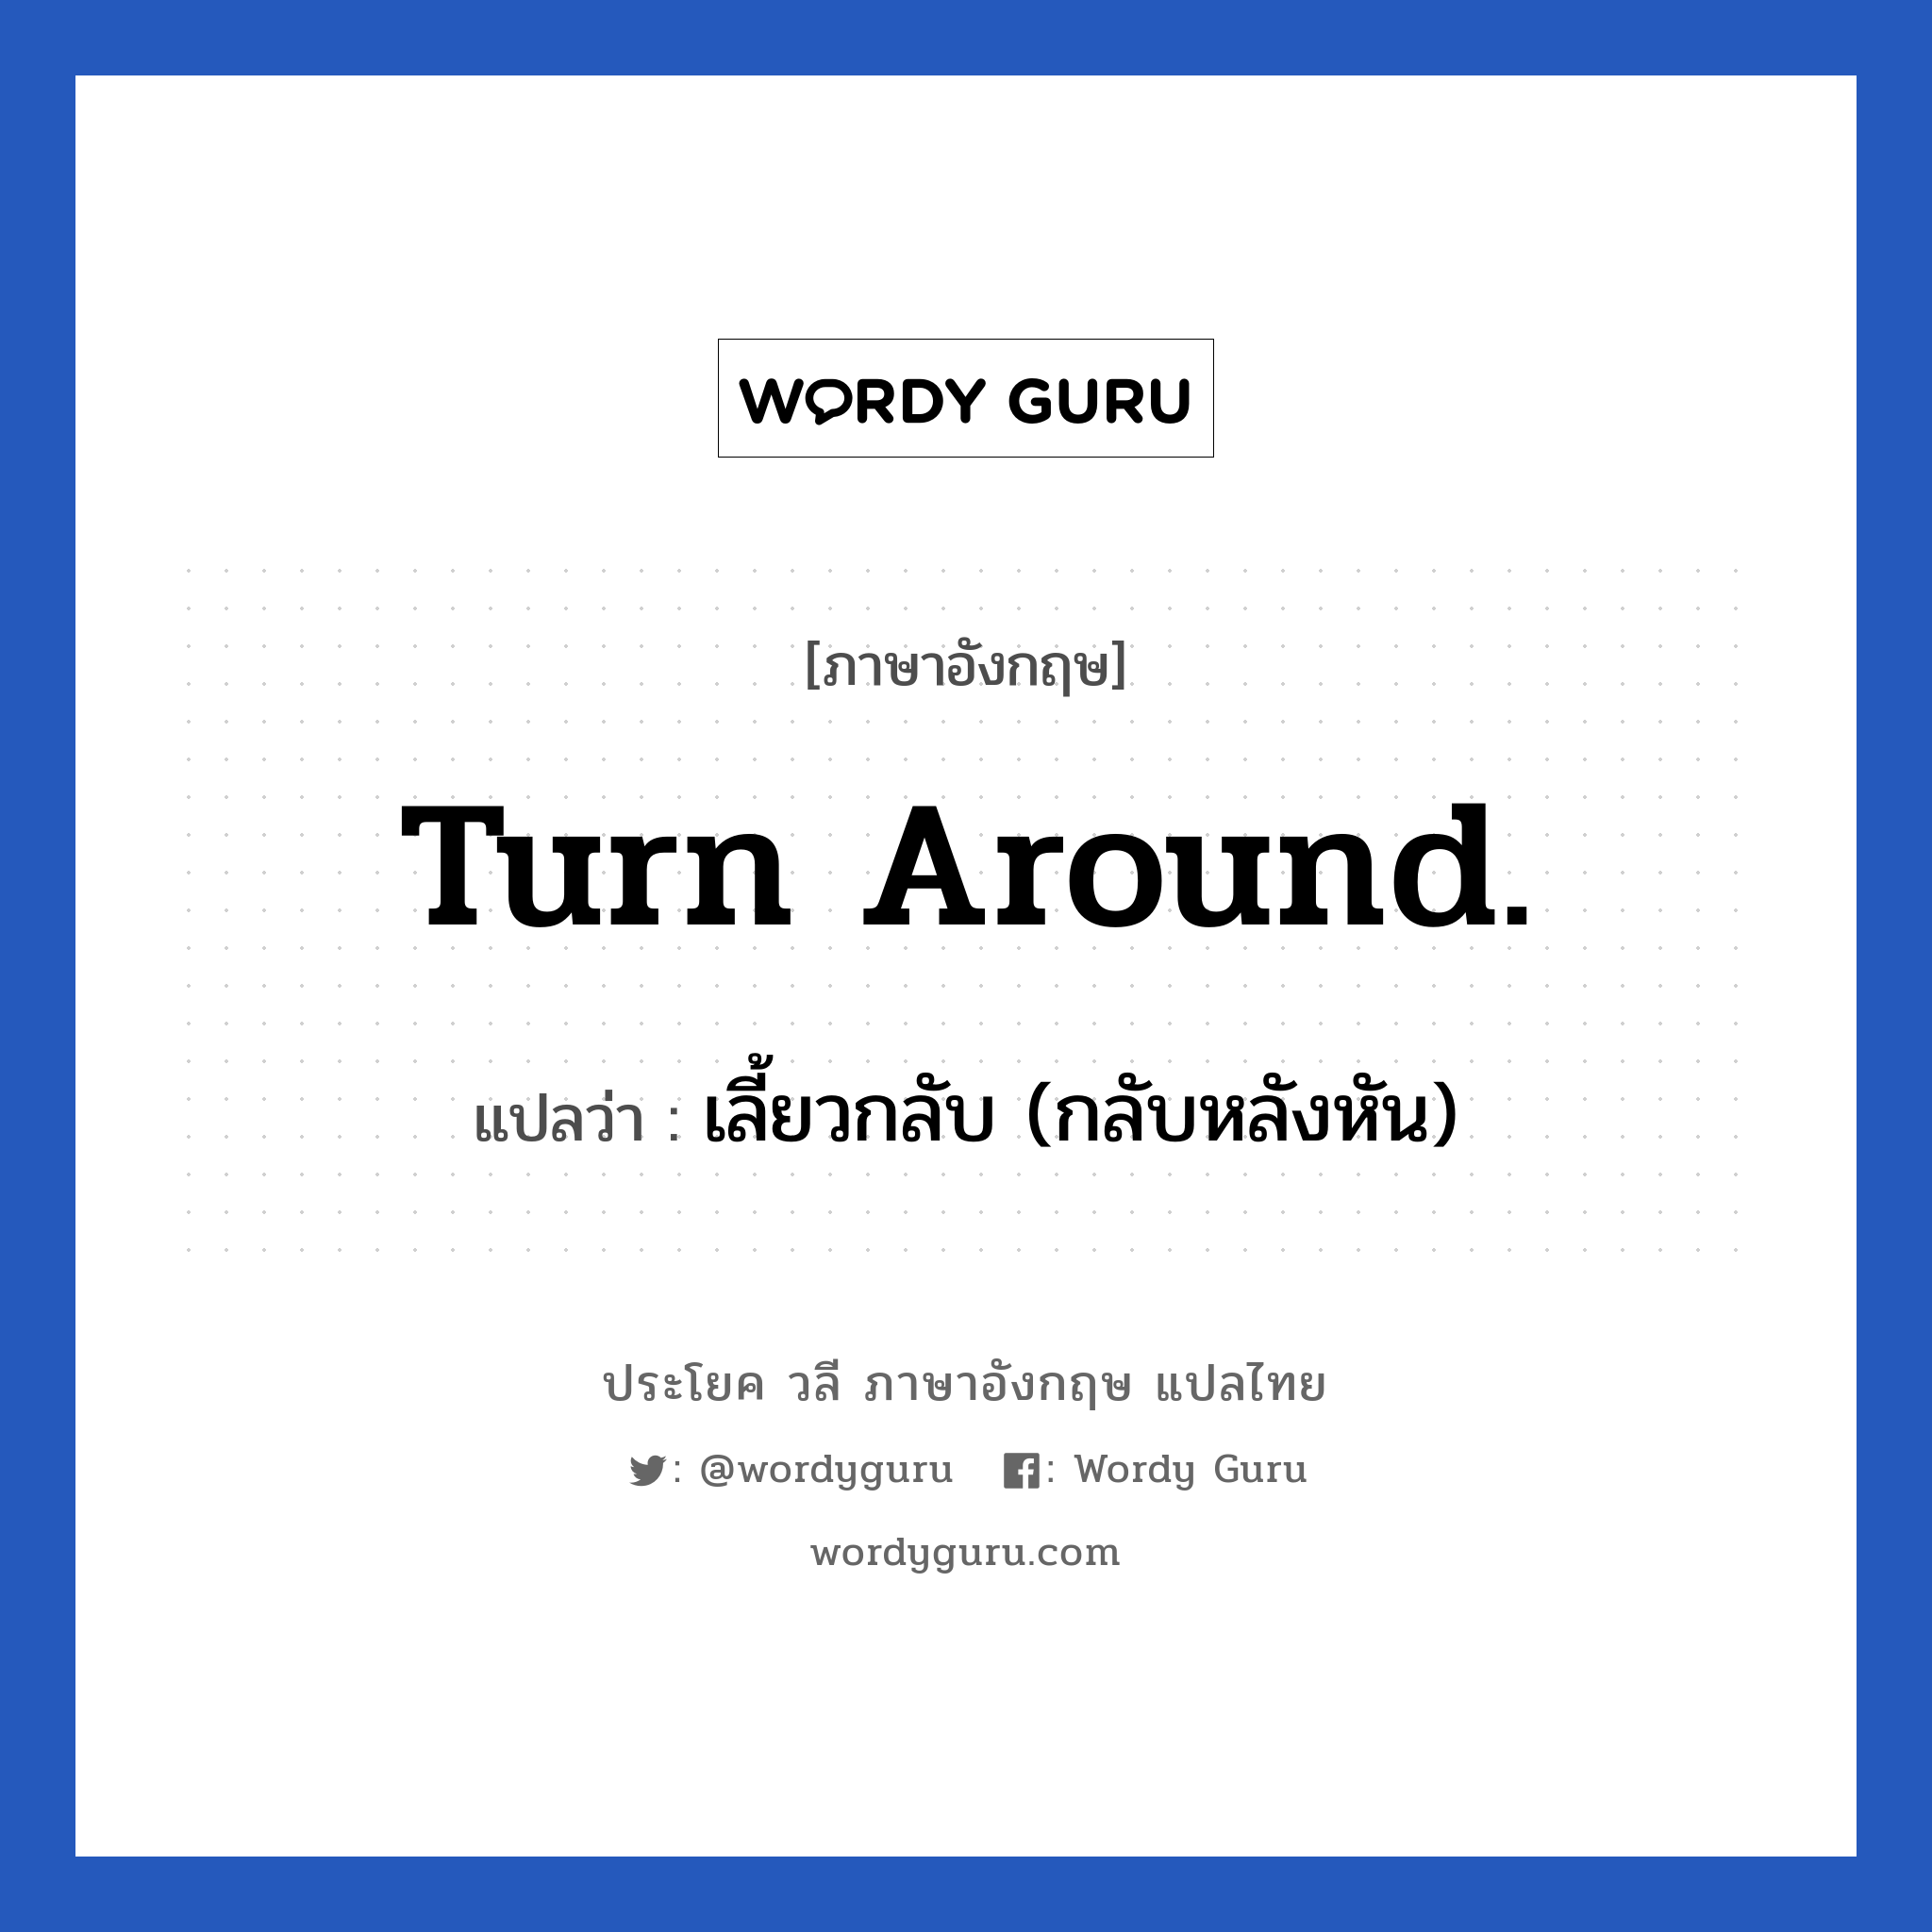 เลี้ยวกลับ (กลับหลังหัน) ภาษาอังกฤษ?, วลีภาษาอังกฤษ เลี้ยวกลับ (กลับหลังหัน) แปลว่า Turn around.